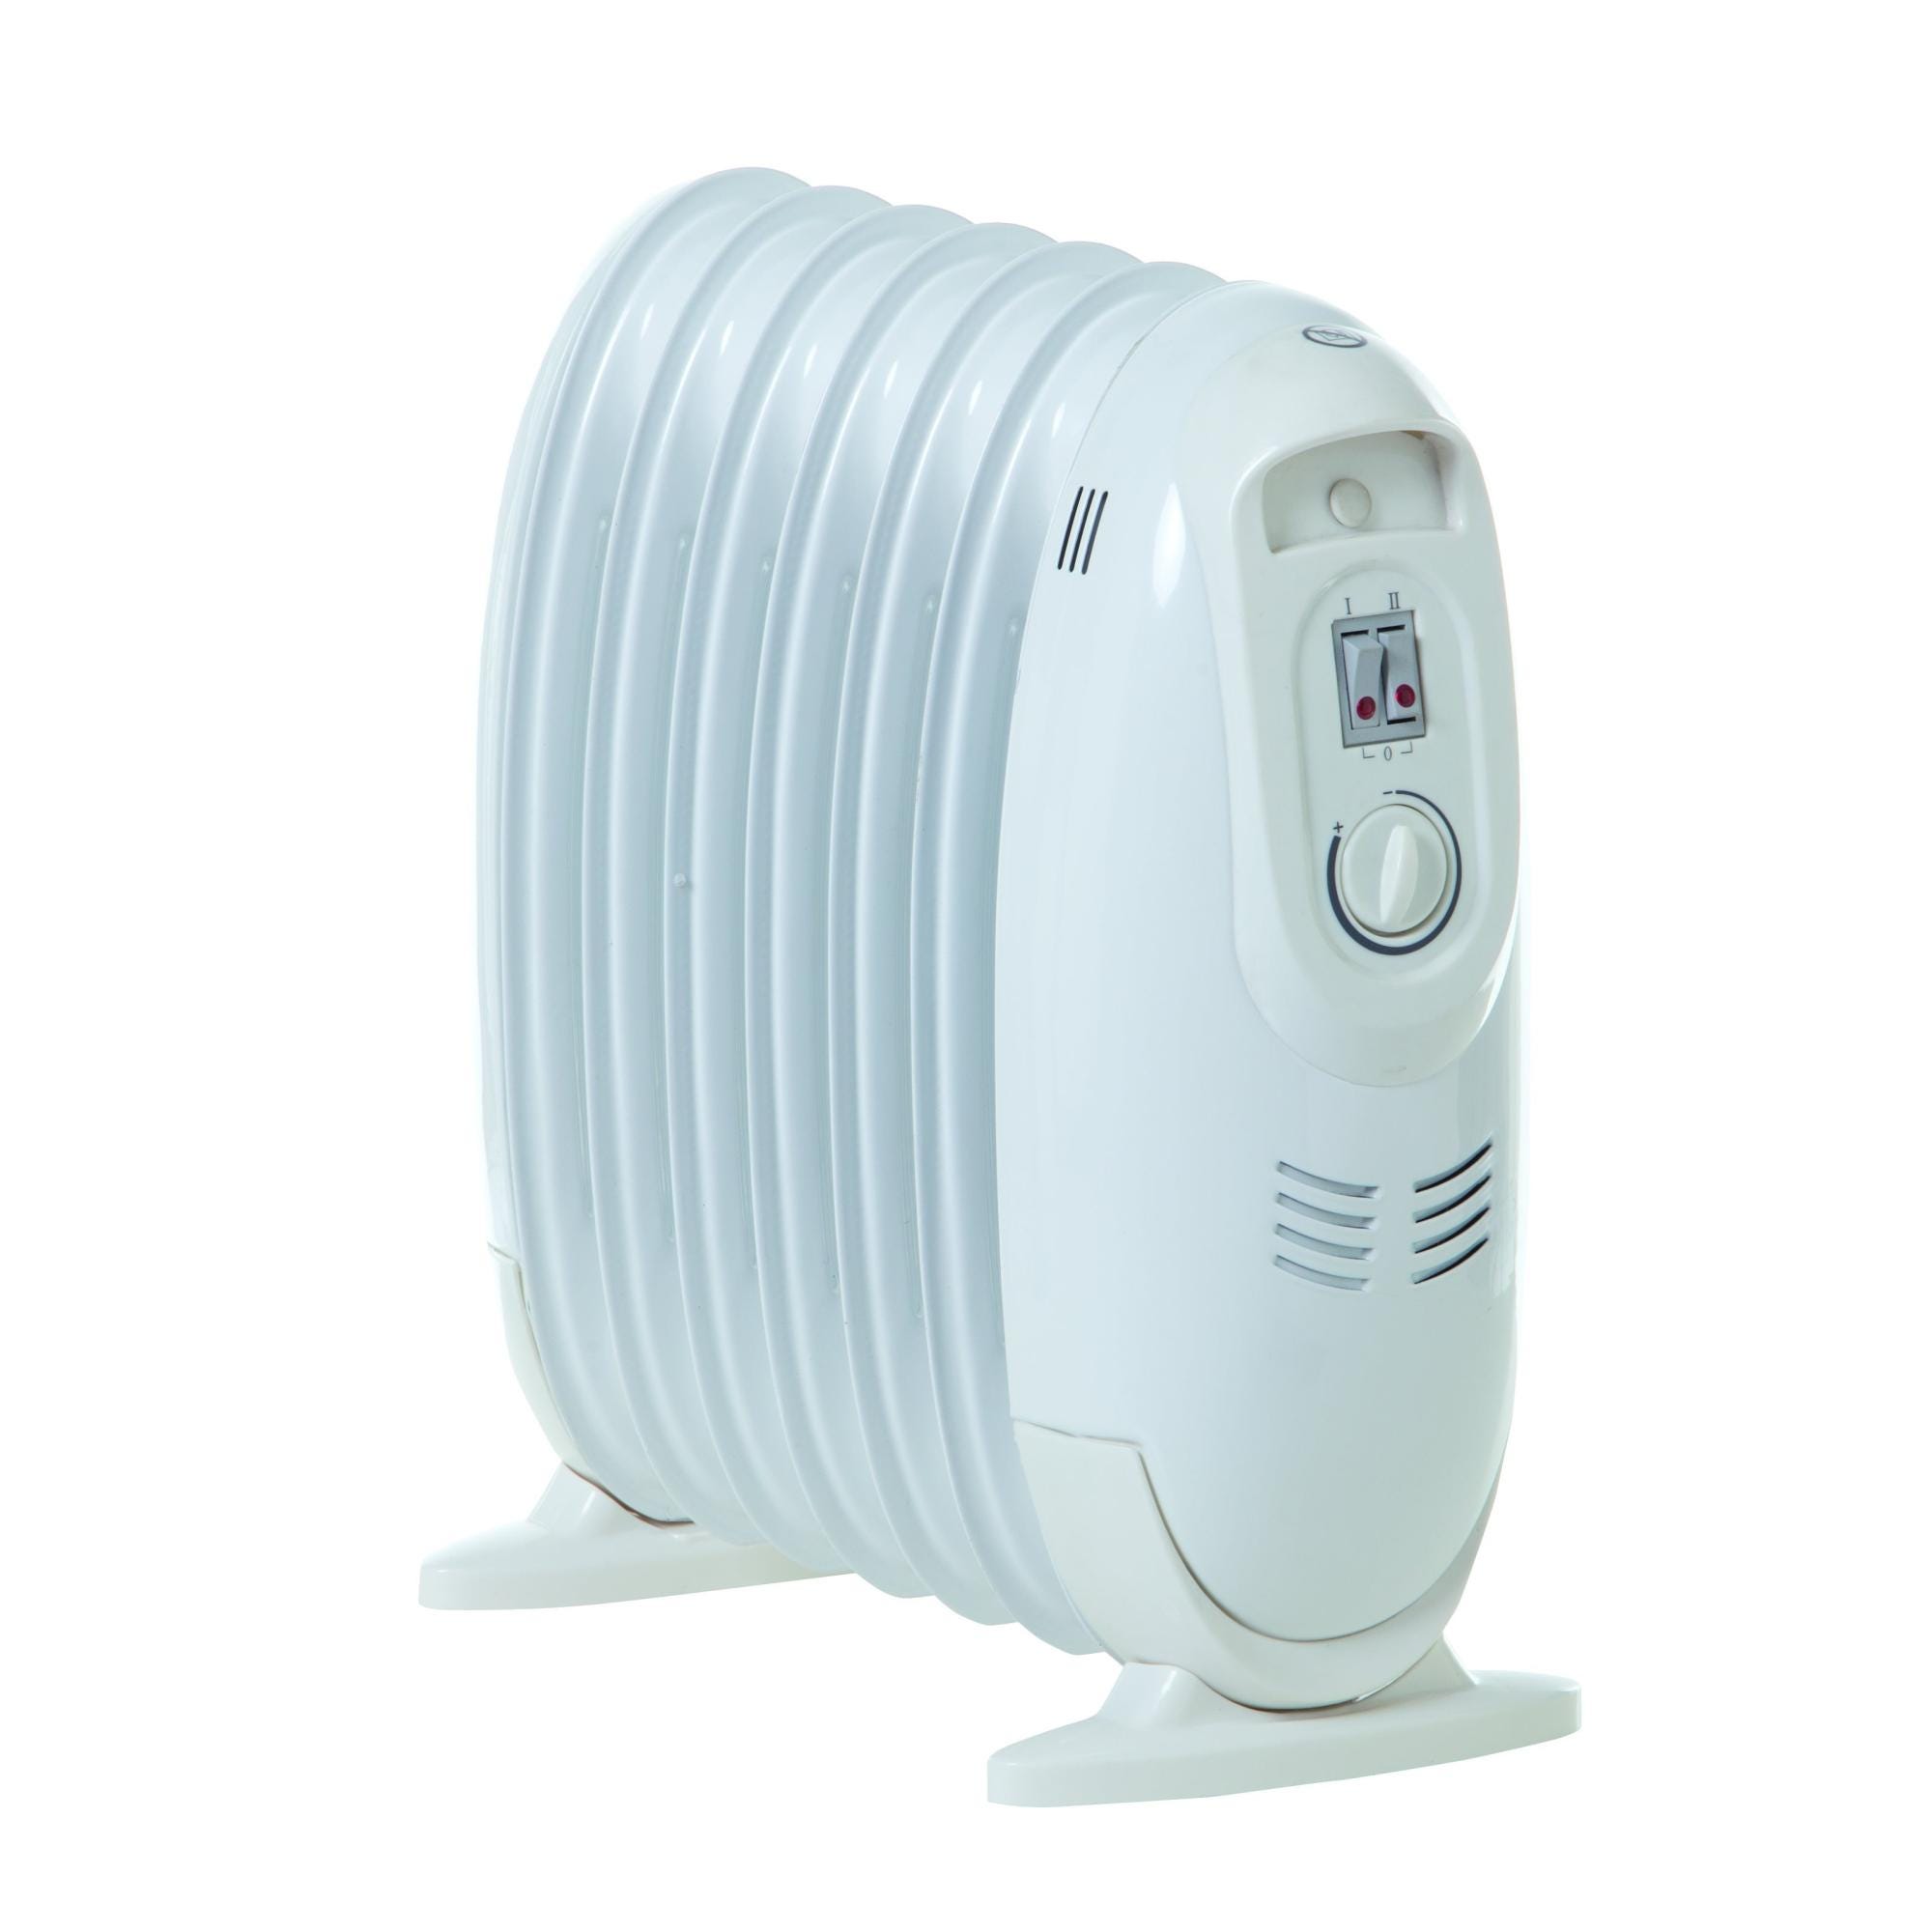 Termoconvettore termosifone elettrico ad olio e potenza regolabile